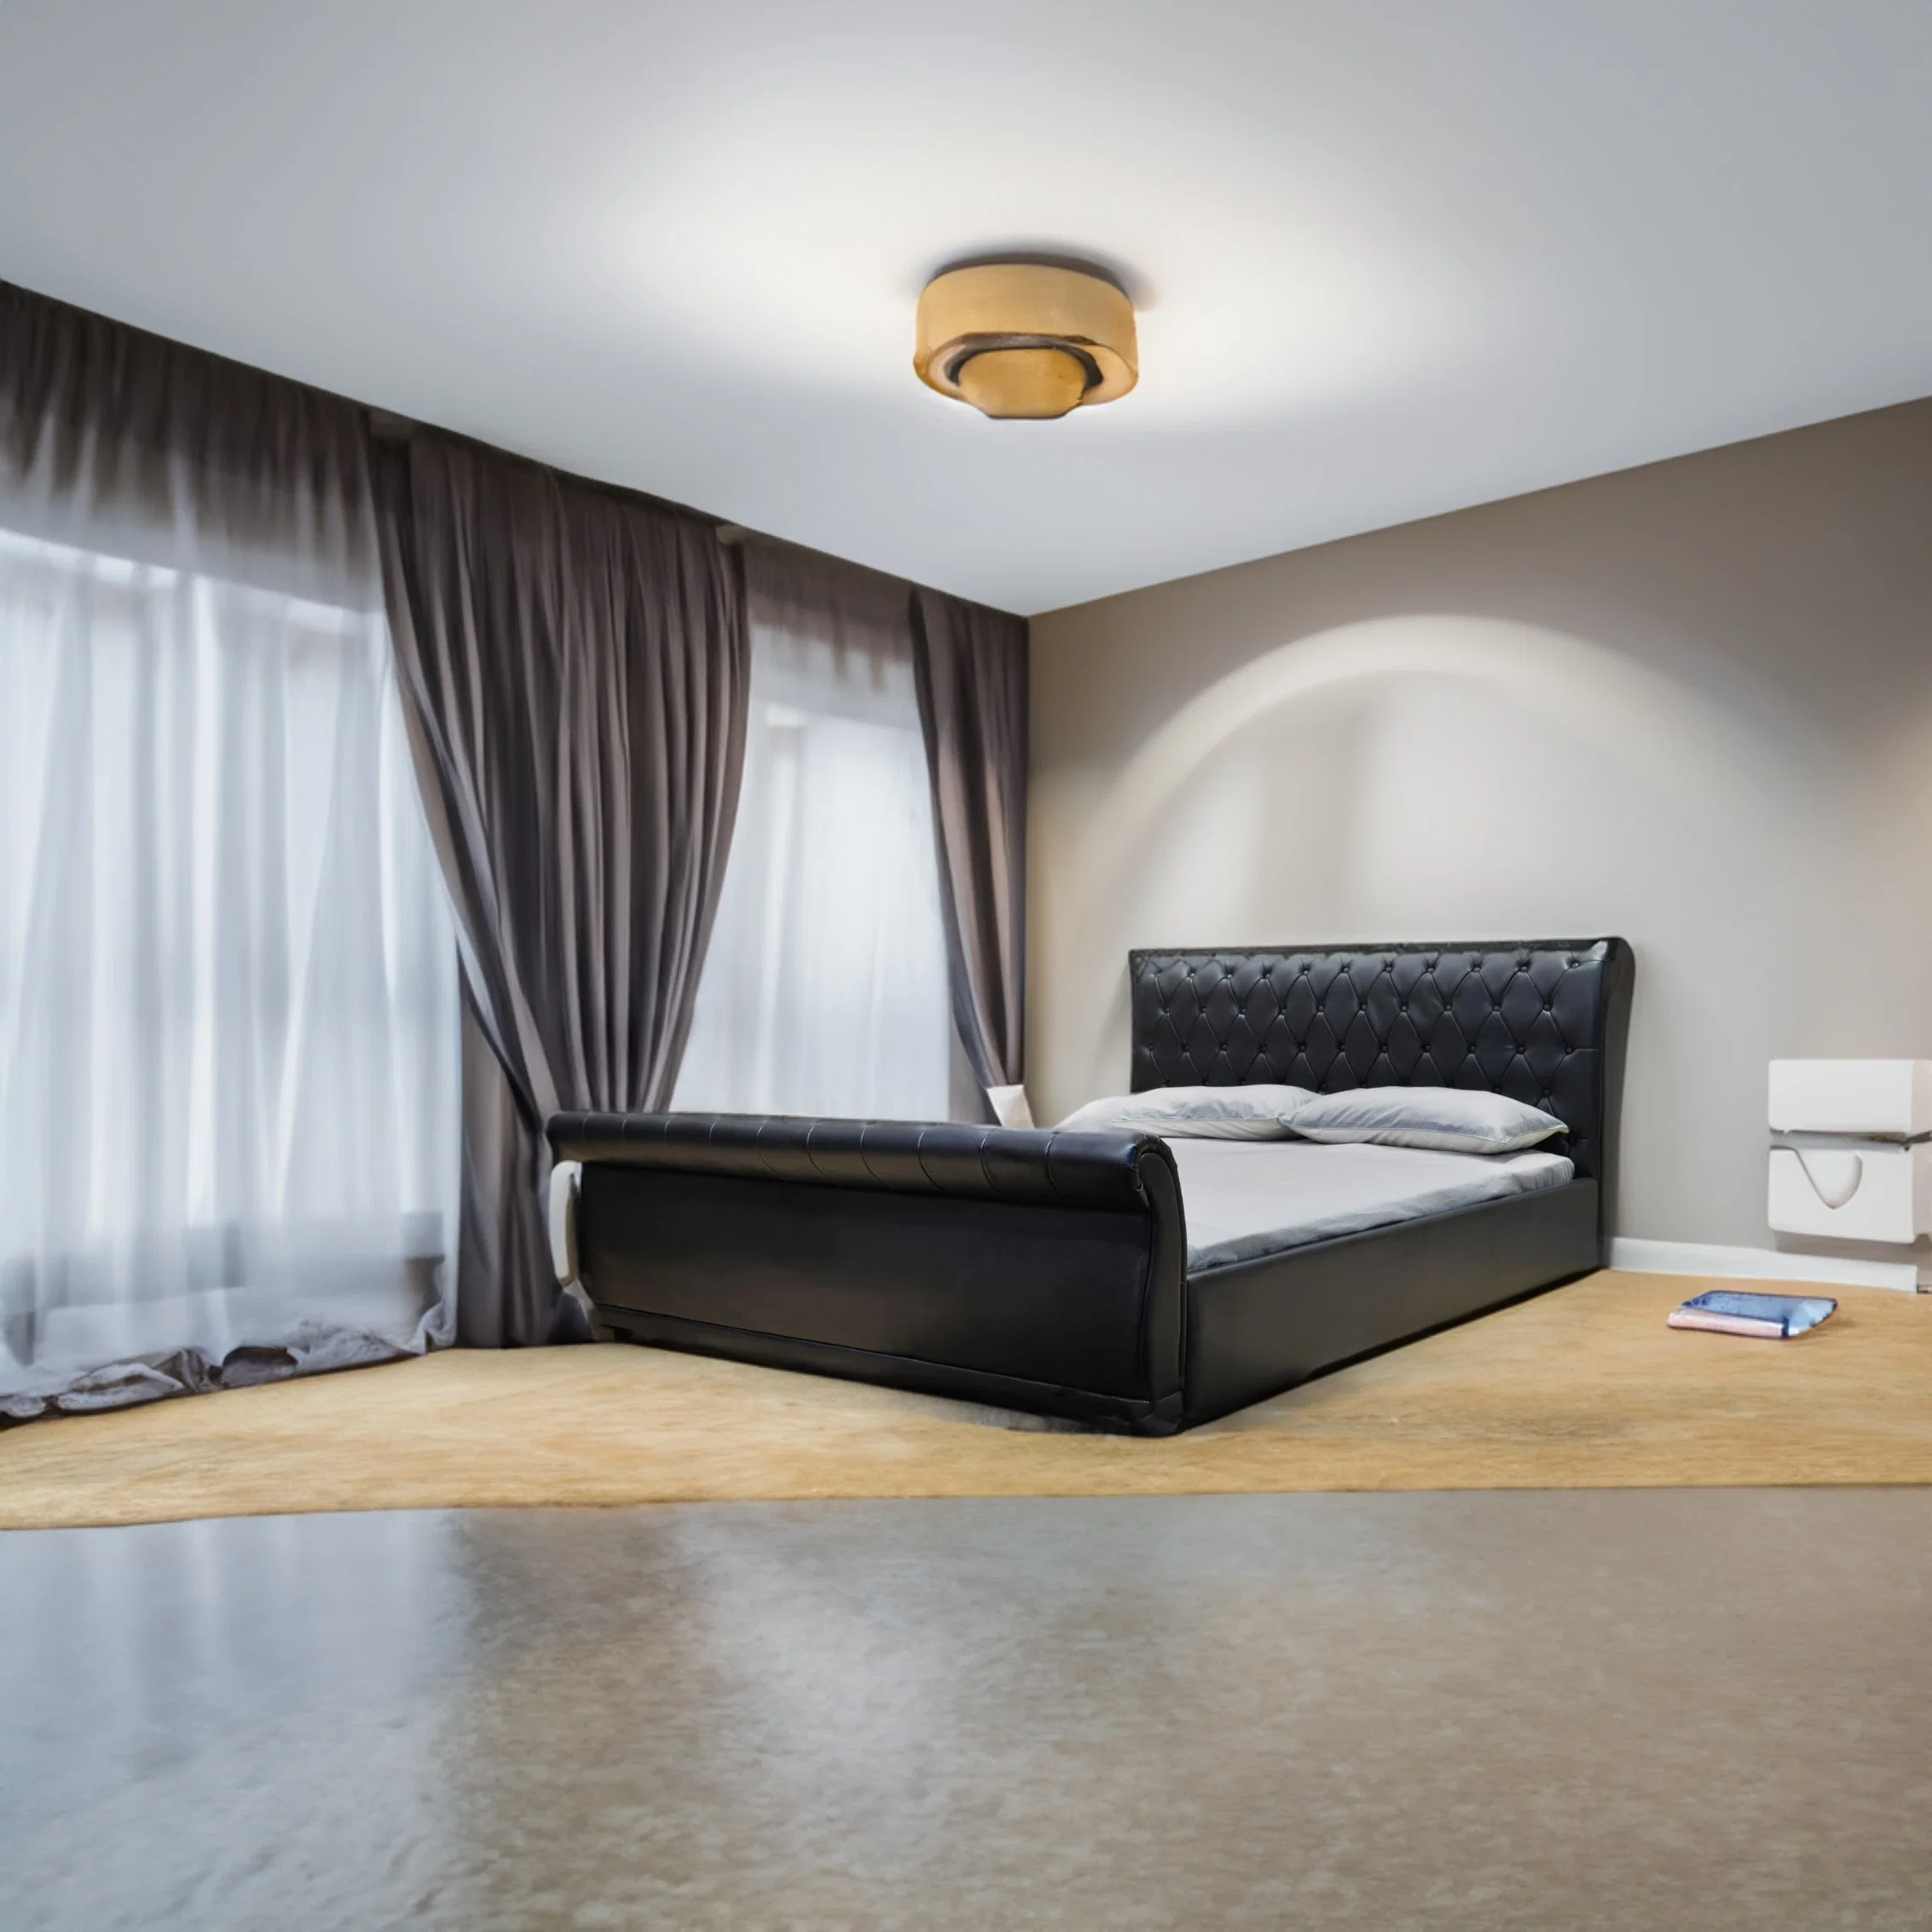 Doble Huayang caliente americana dormitorio cama de diseño personalizado de muebles de salón